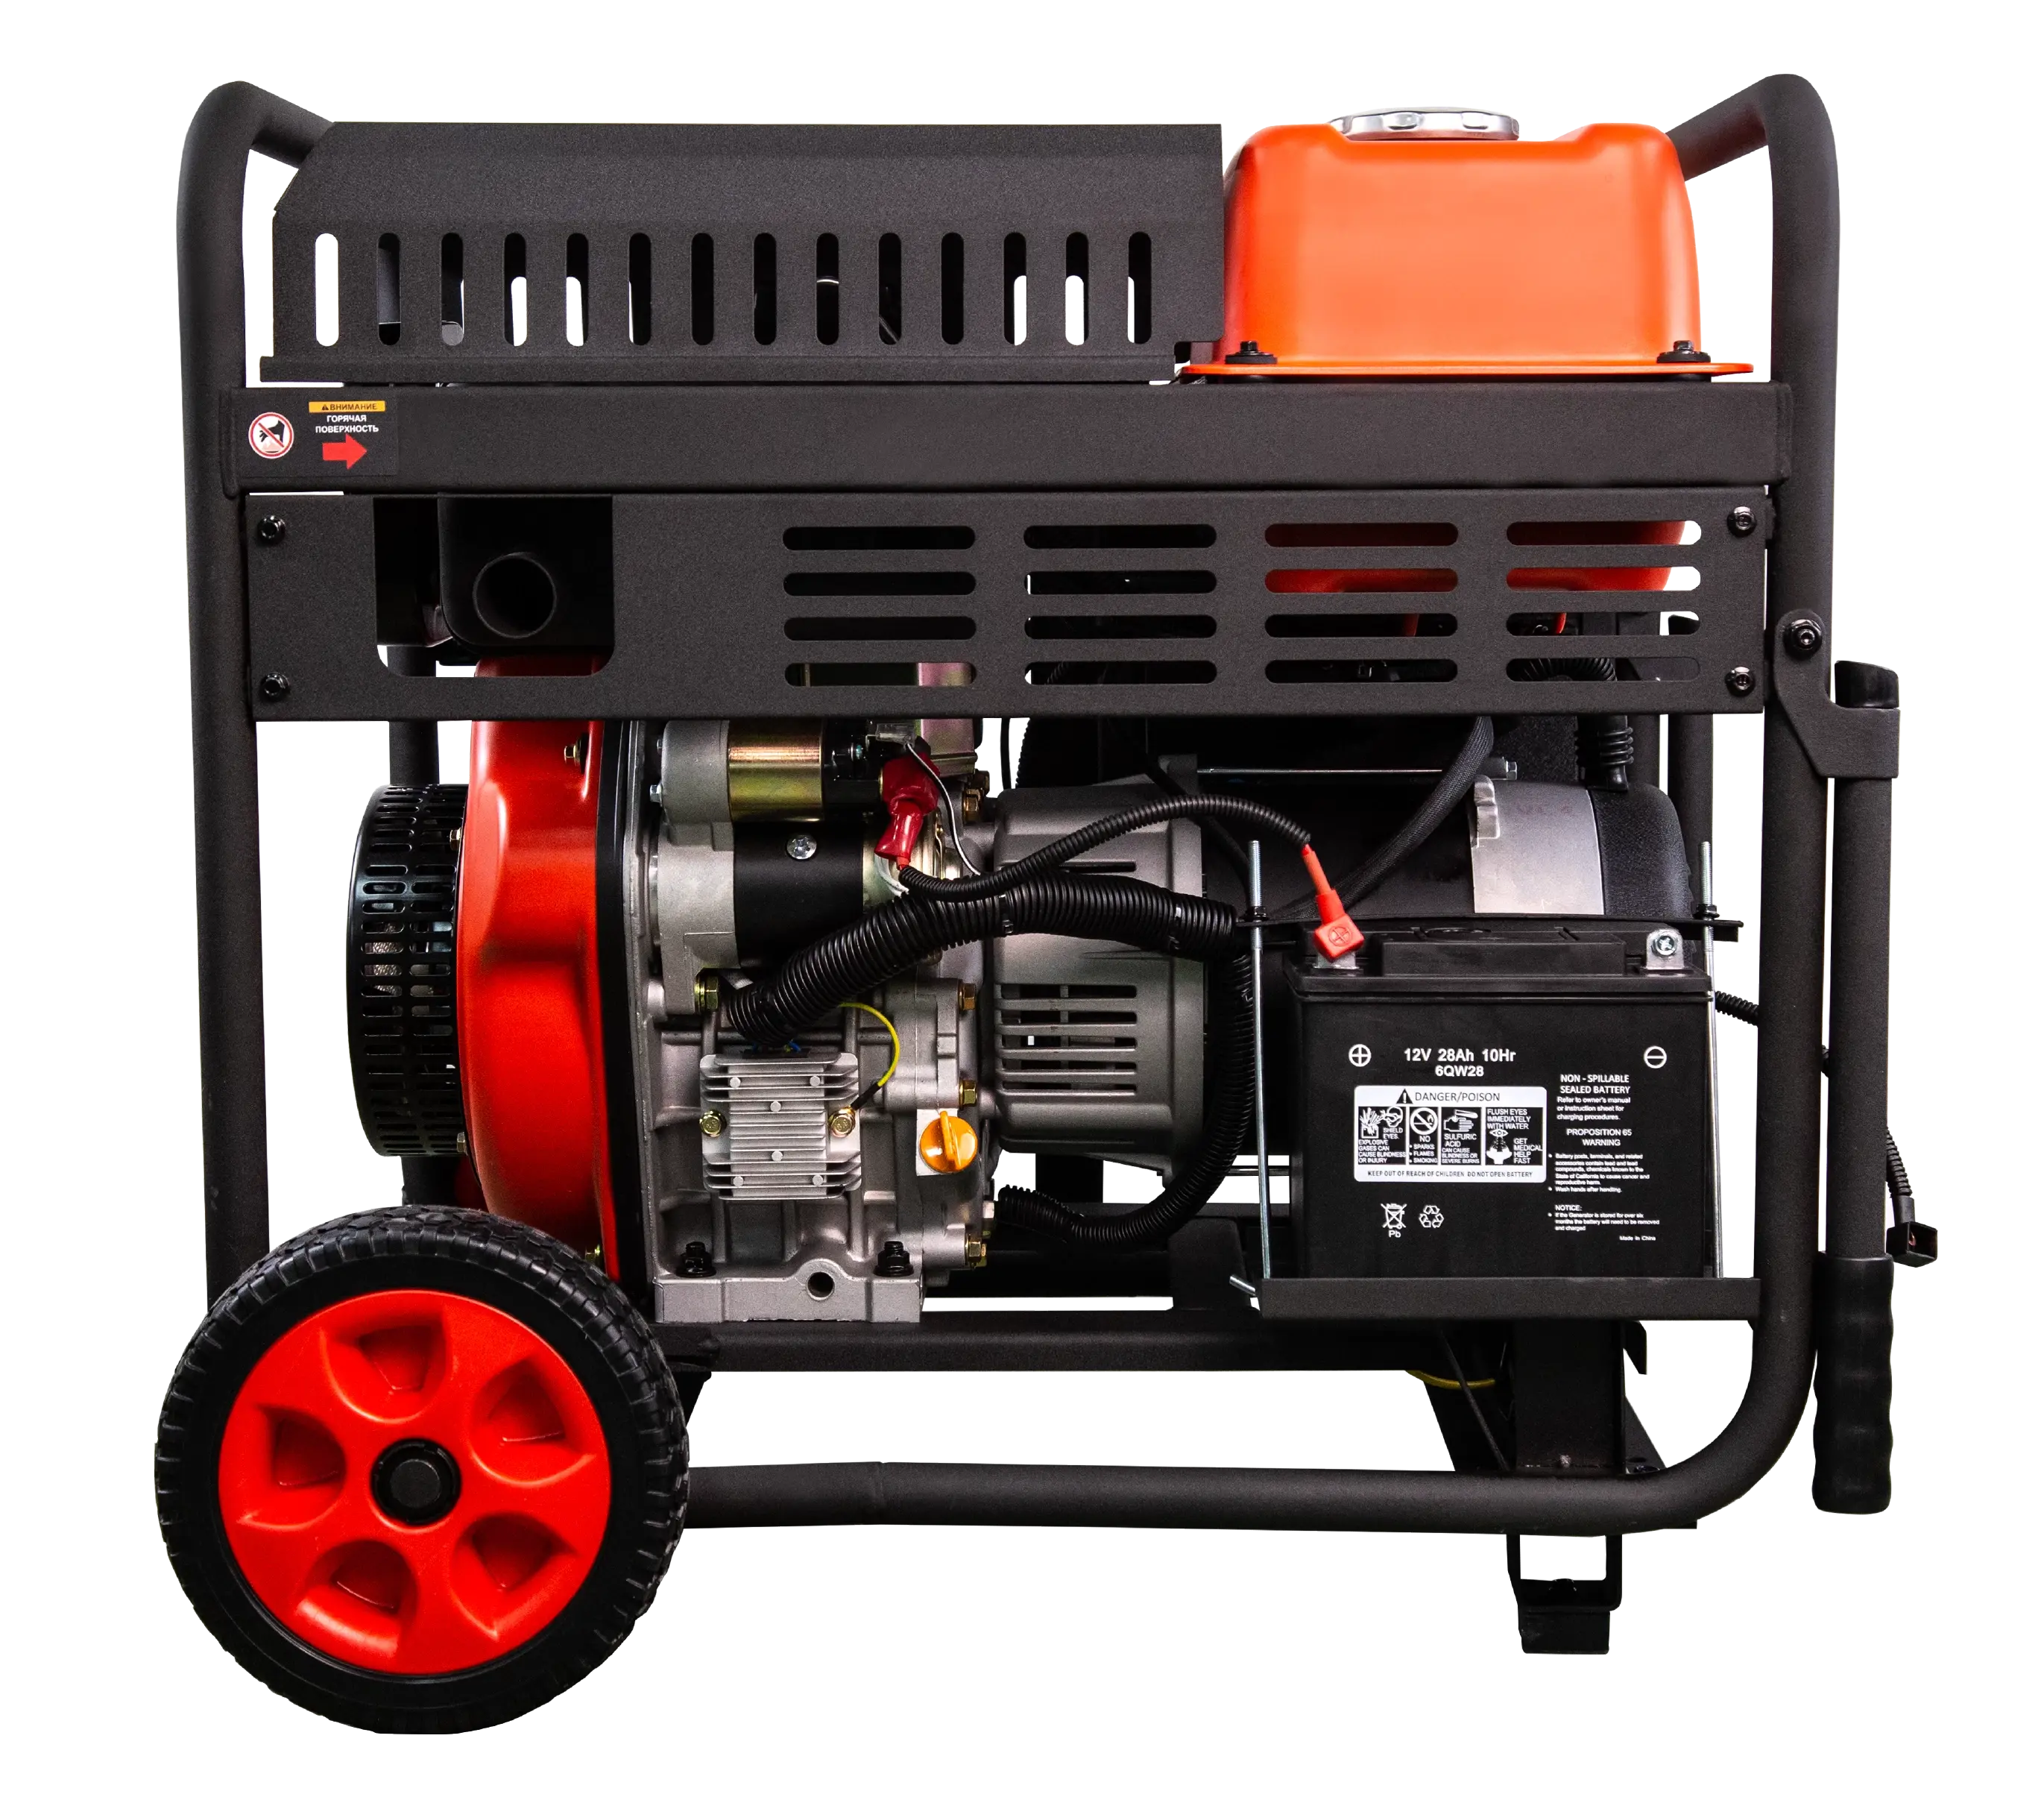 Дизельный генератор 5 кВт AD5500EA A-IPOWER Айповер Гарантия 2 года Официальный магазин